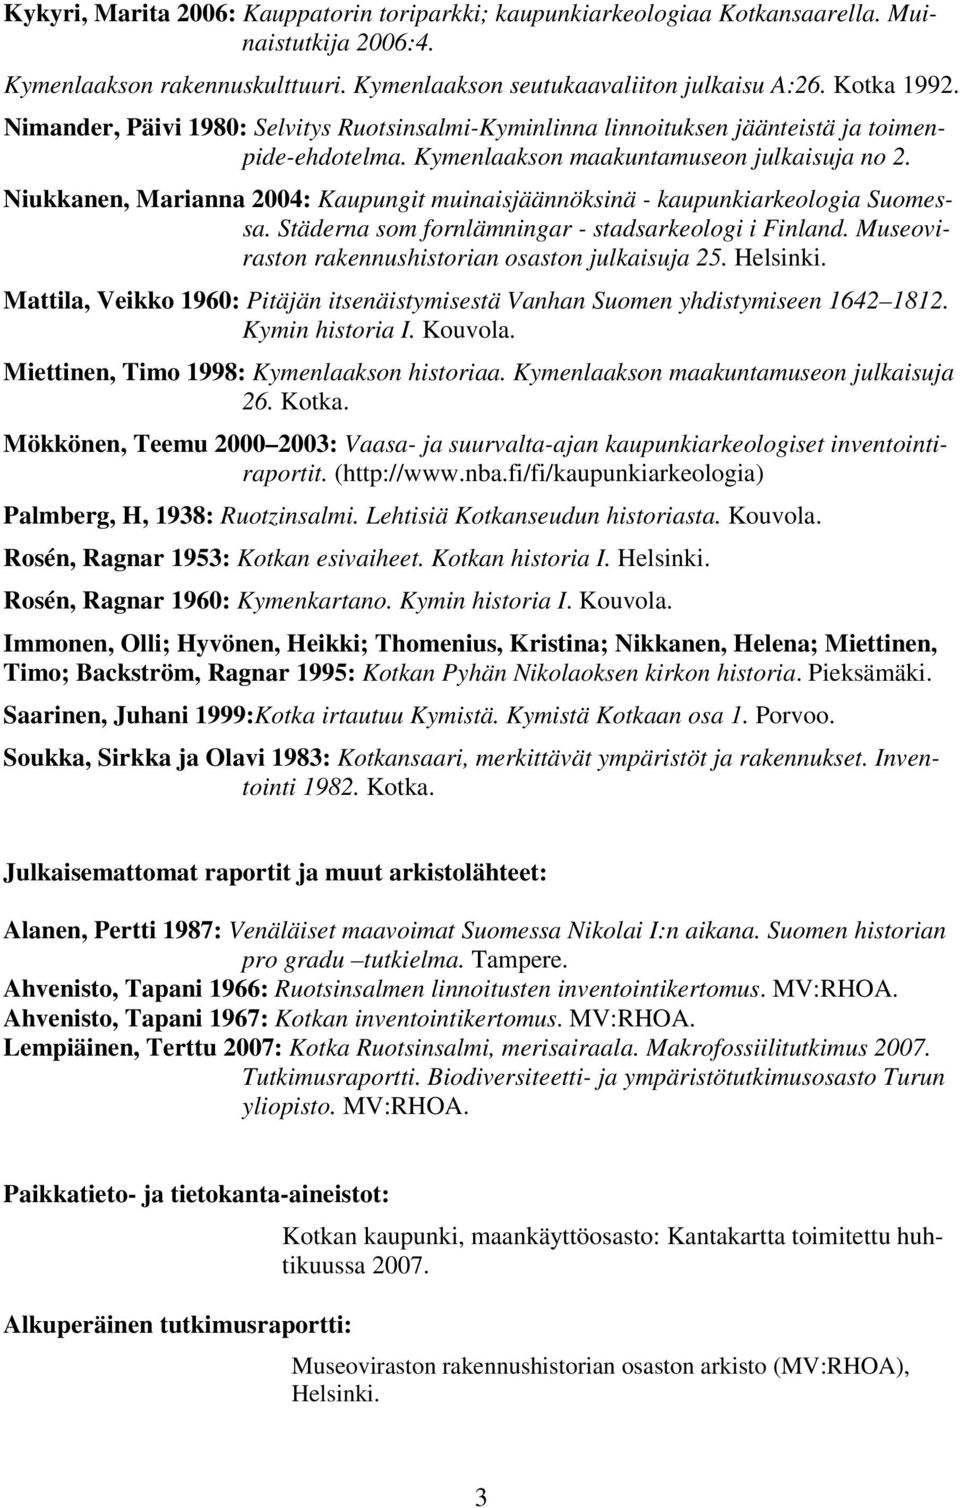 Niukkanen, Marianna 004: Kaupungit muinaisjäännöksinä - kaupunkiarkeologia Suomessa. Städerna som fornlämningar - stadsarkeologi i Finland. Museoviraston rakennushistorian osaston julkaisuja 5.